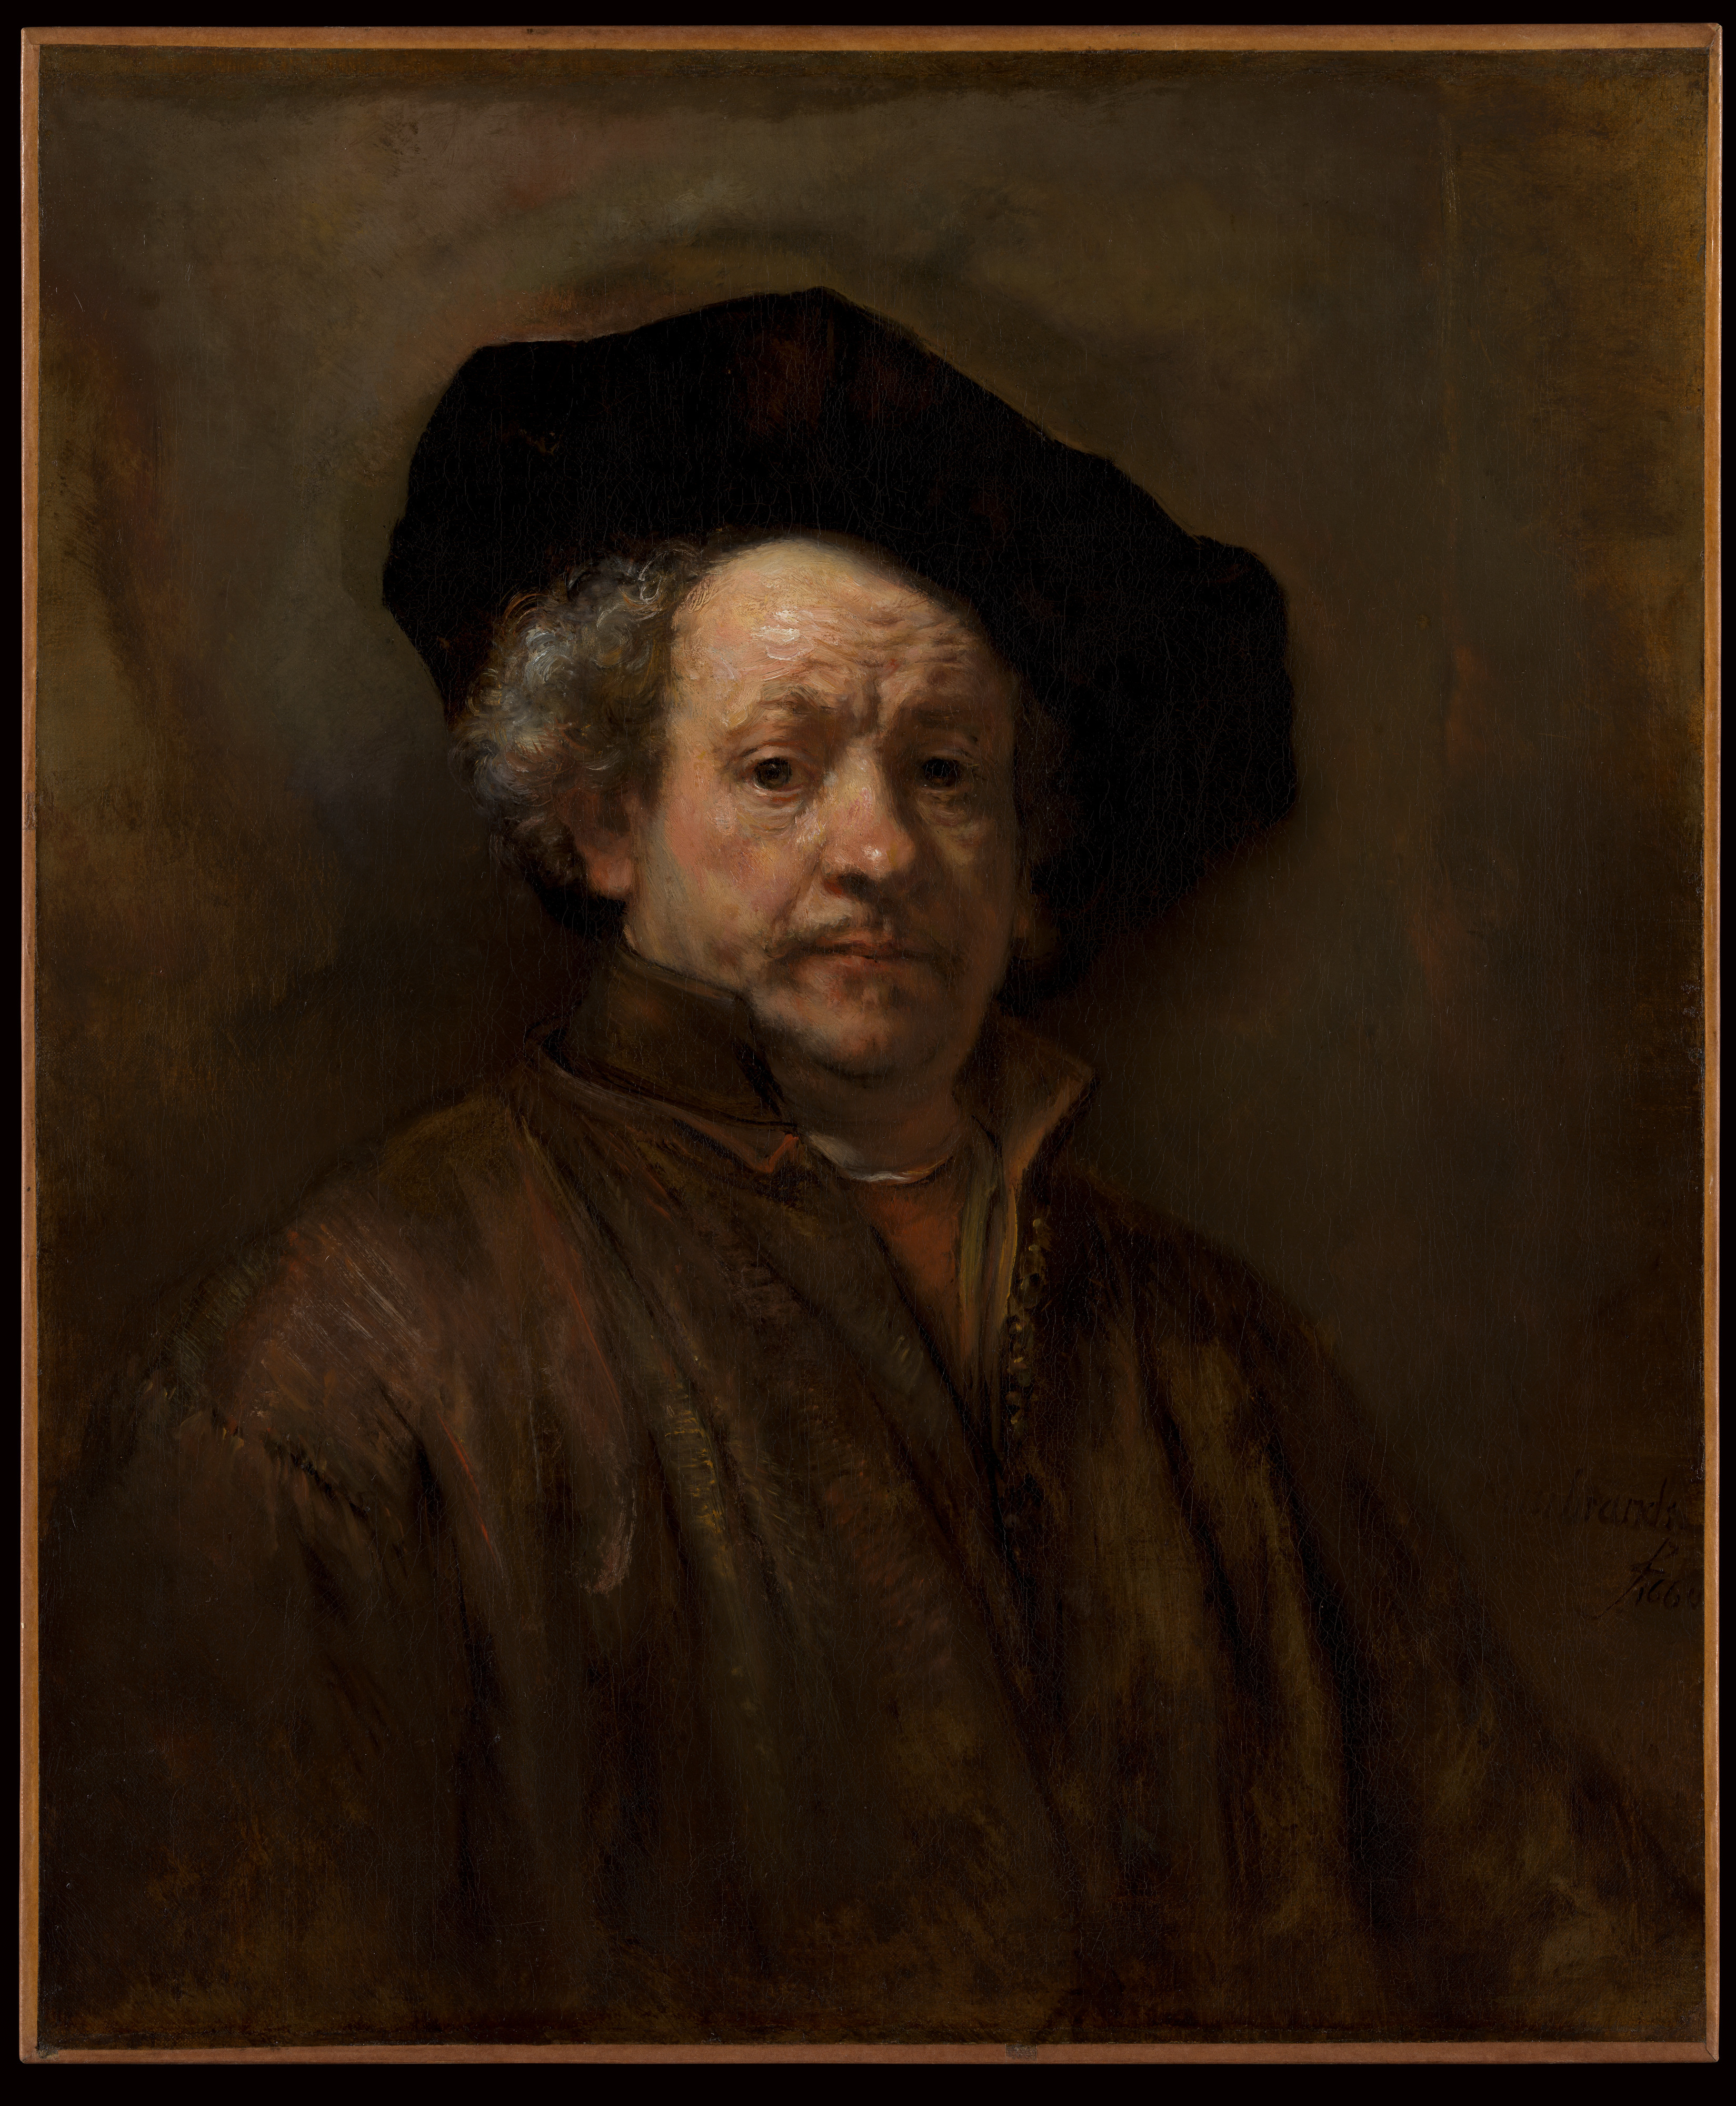 Autoportret by Rembrandt van Rijn - 1660 - 31 5/8 x 26 1/2 in 